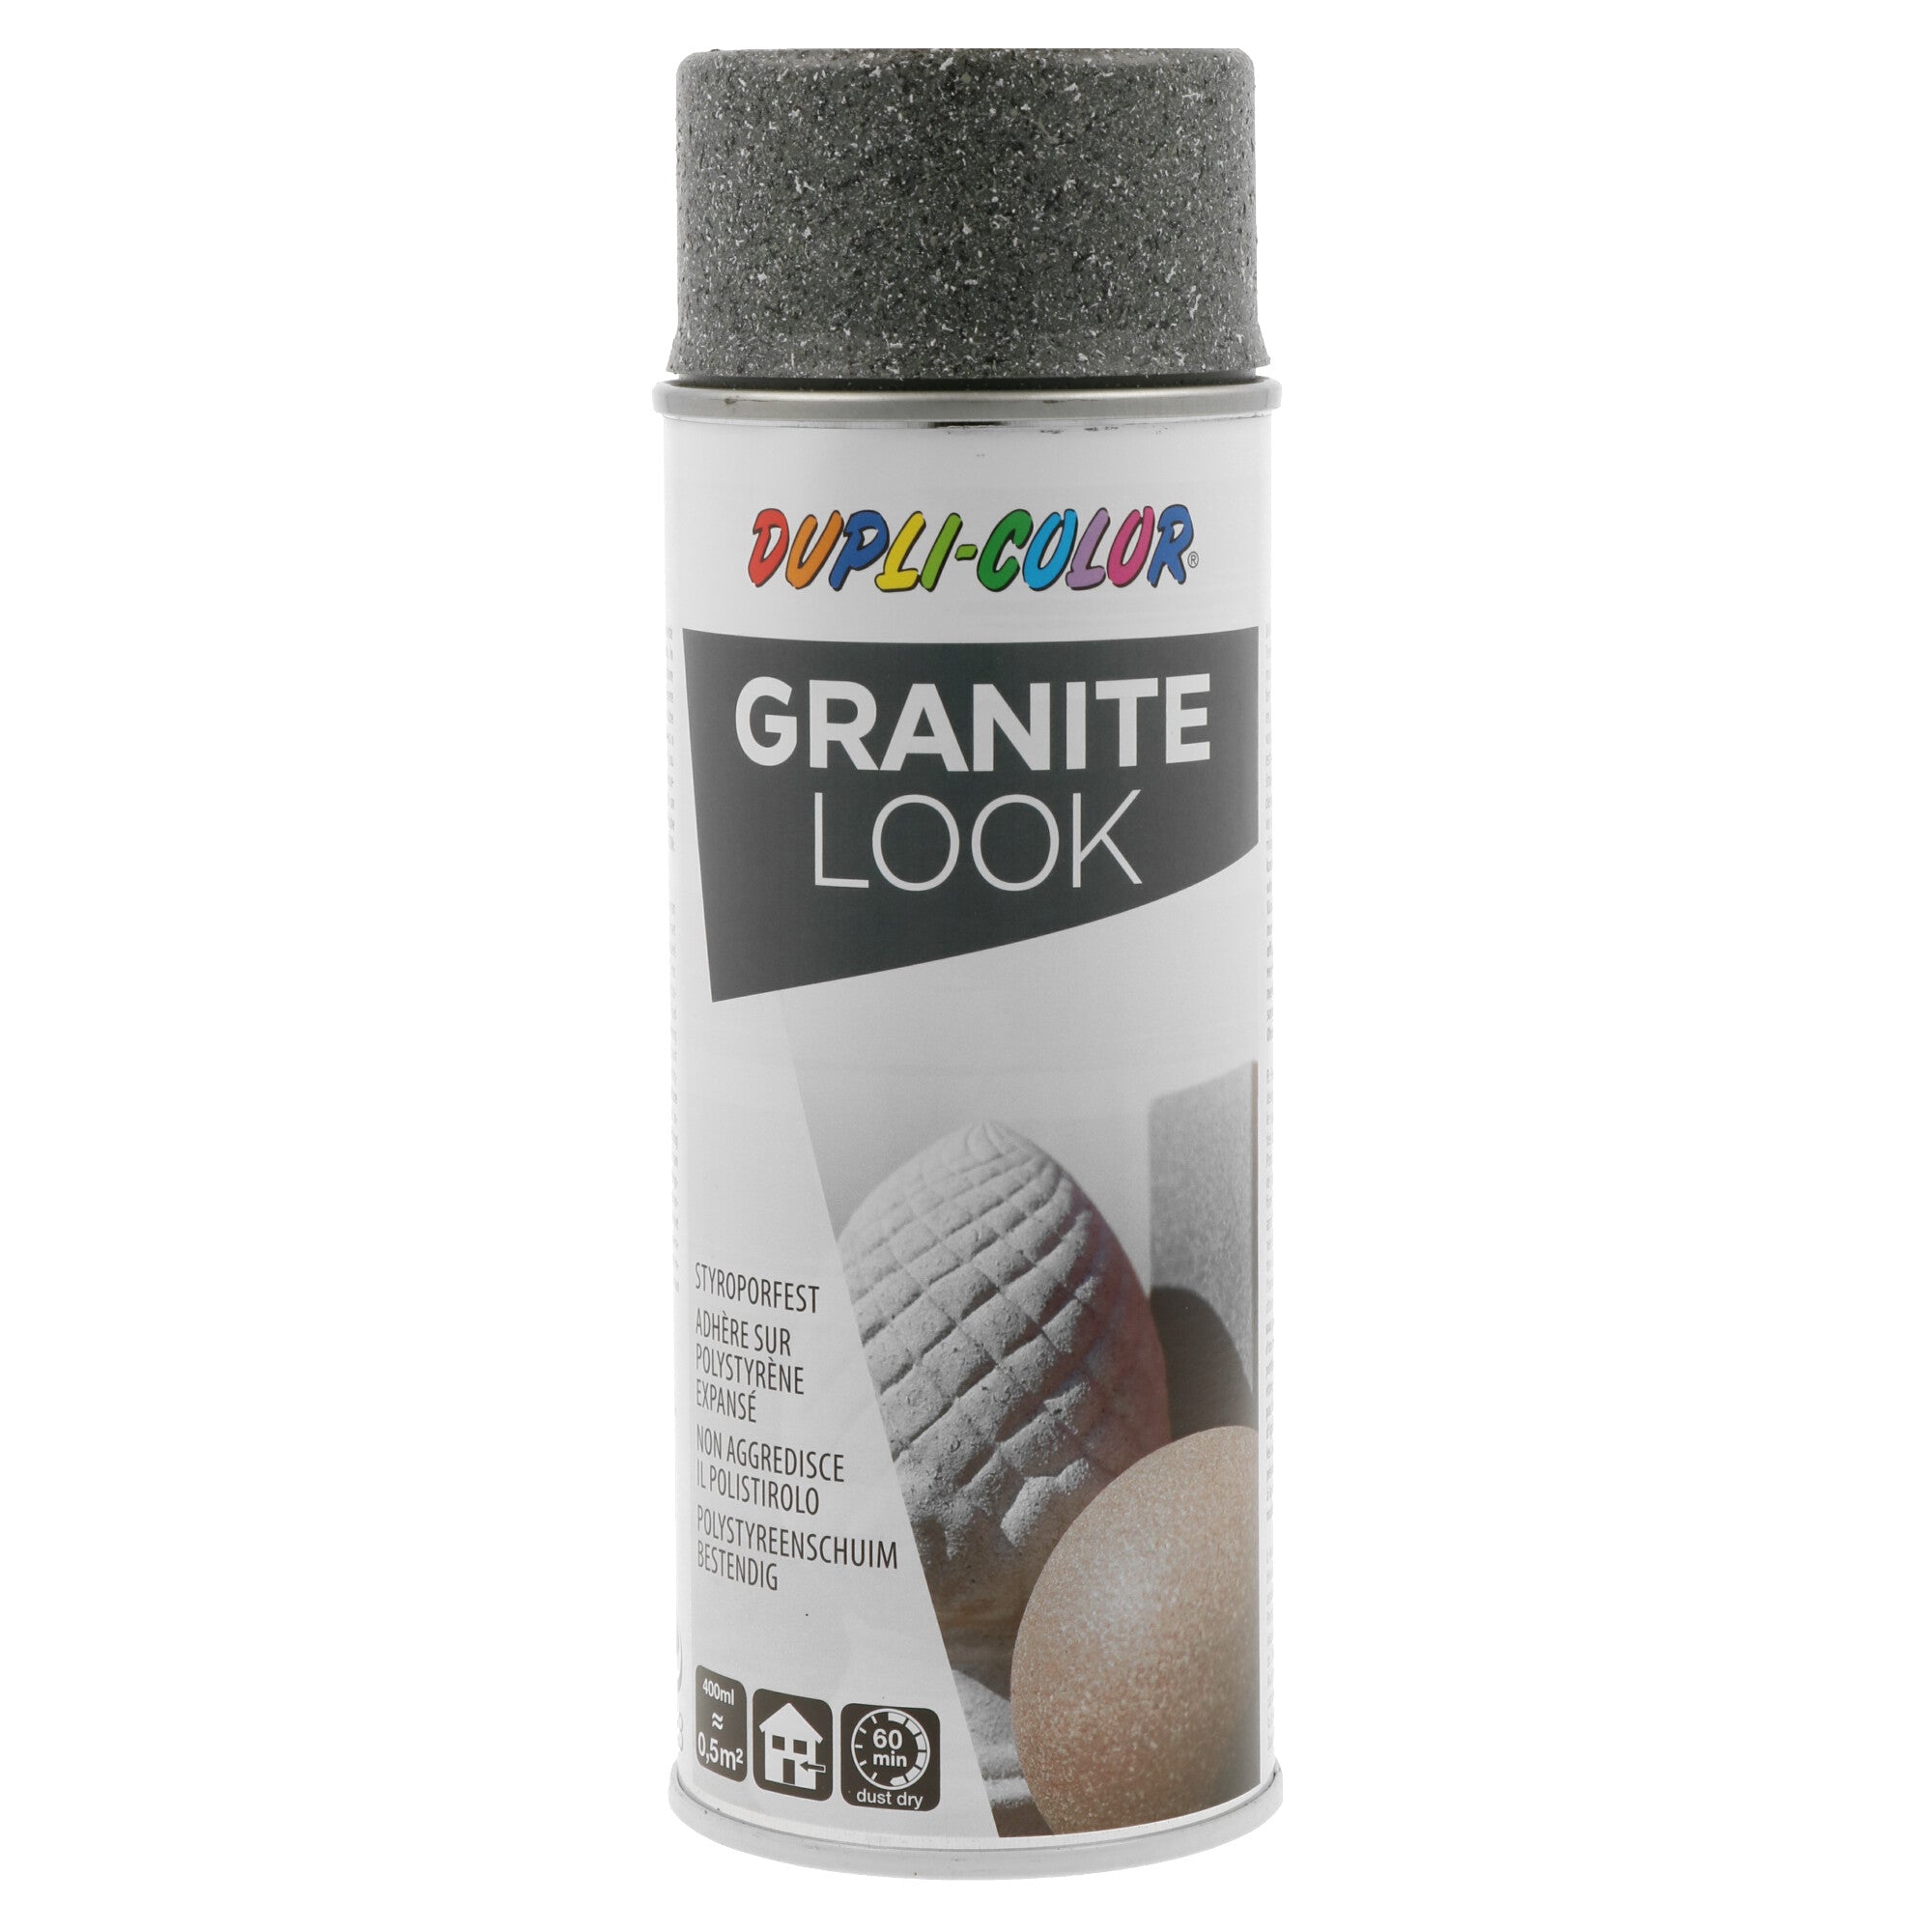 Granite Look grå. Dekorationsspray.